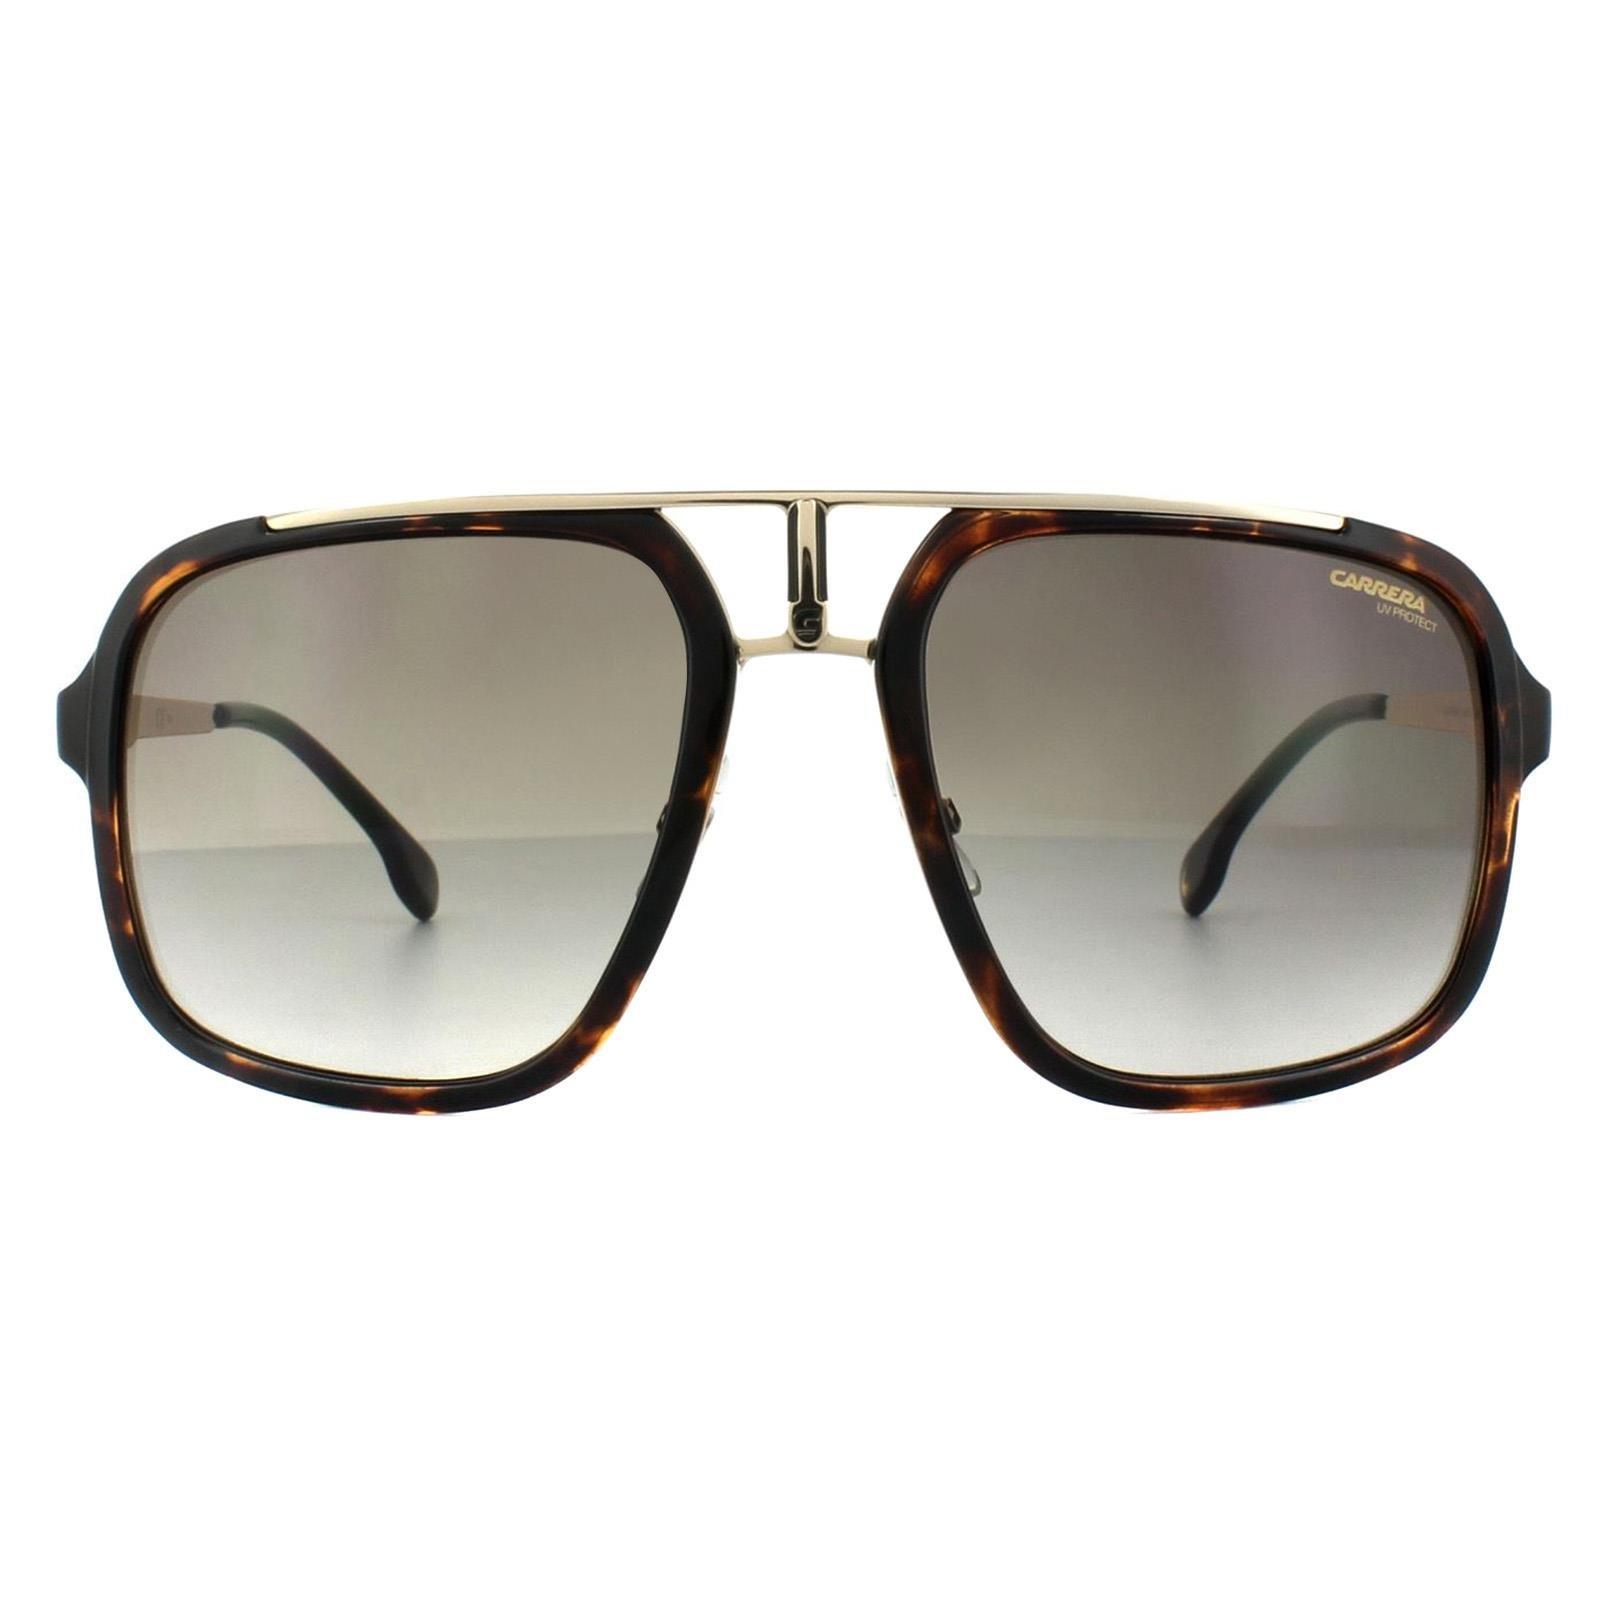 Квадратные солнцезащитные очки Havana золотисто-коричневого цвета с градиентом Carrera, коричневый